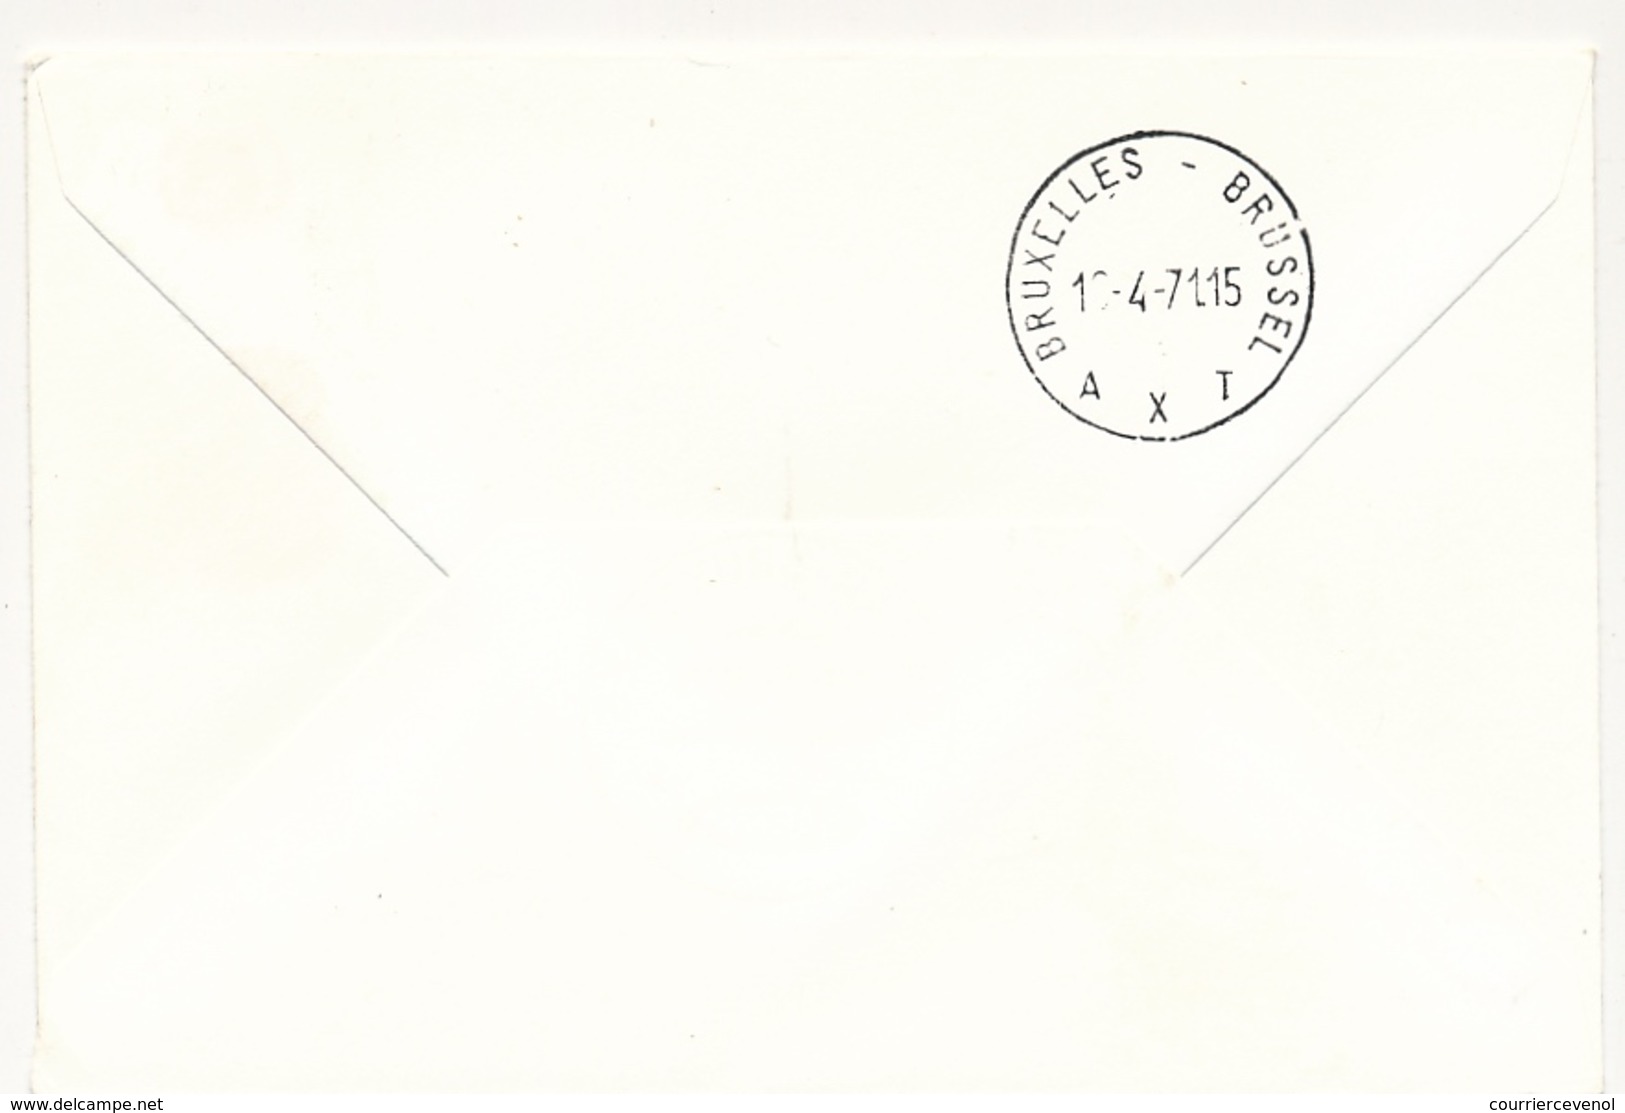 BELGIQUE - 2 Enveloppes SABENA - 1ere Liaison Aérienne - DAKAR - BRUXELLES 16/4/1971 Et Aller 13/4/1971 - Senegal (1960-...)